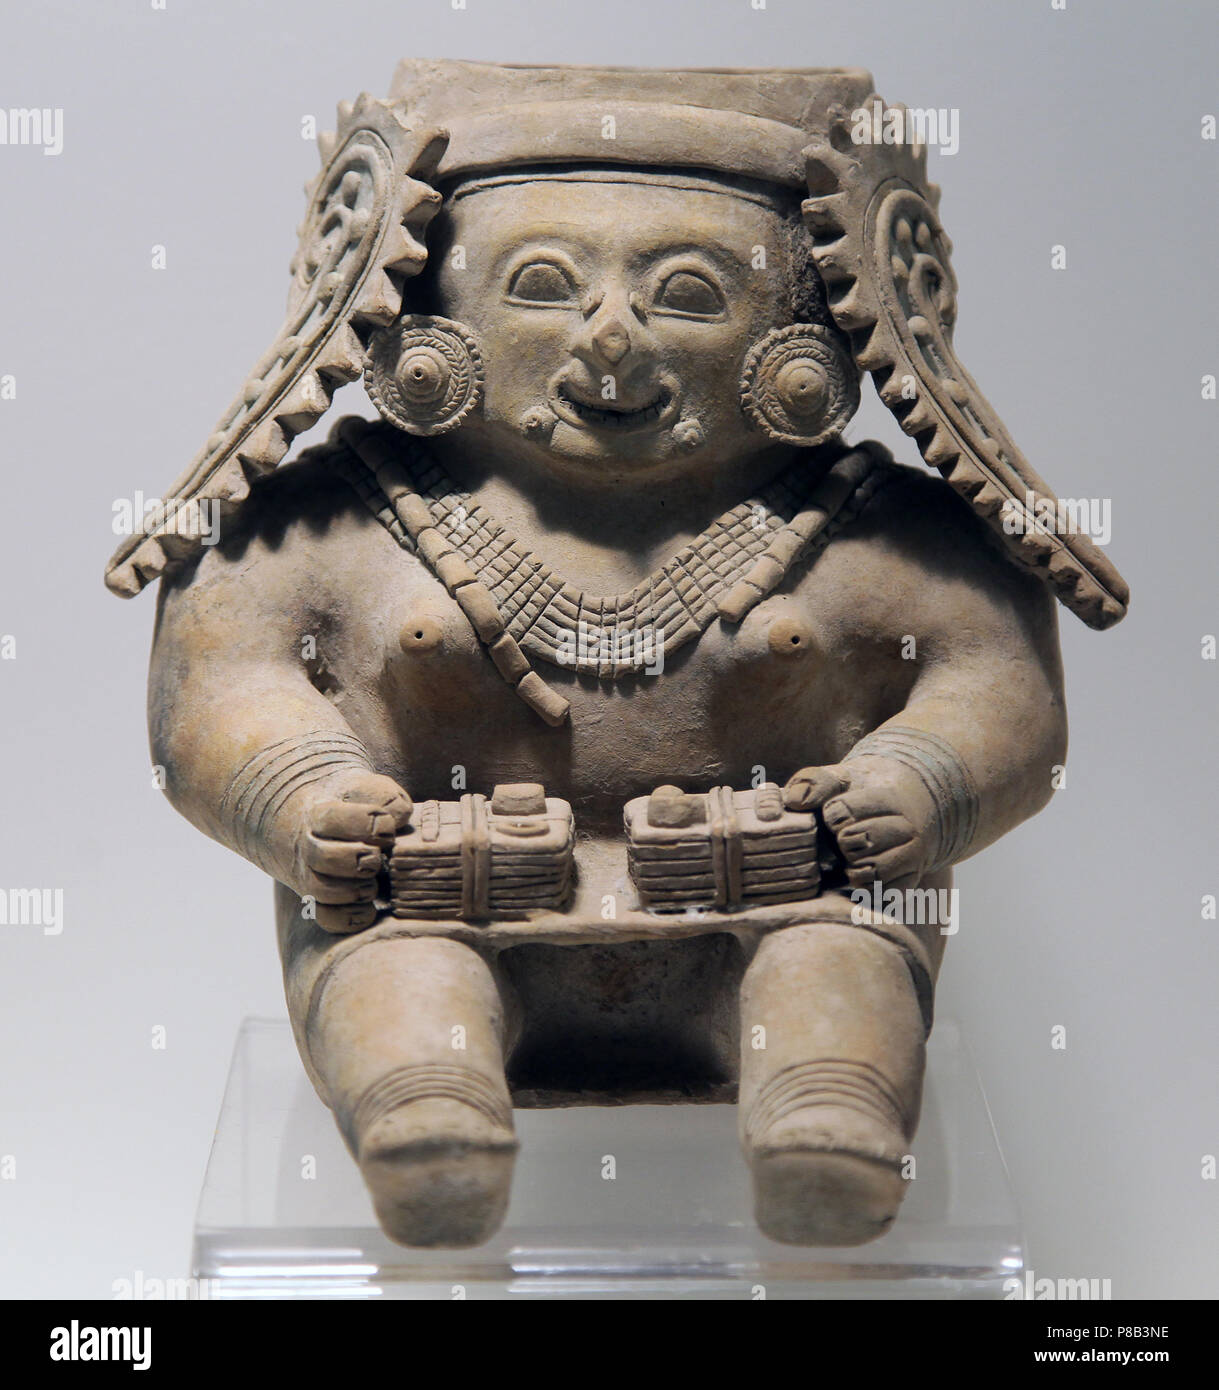 Figurine en céramique en forme de figure humaine.Représentant de la culture Jama Coaque autour de San Isidoro dans la province de Manabi Equateur Banque D'Images